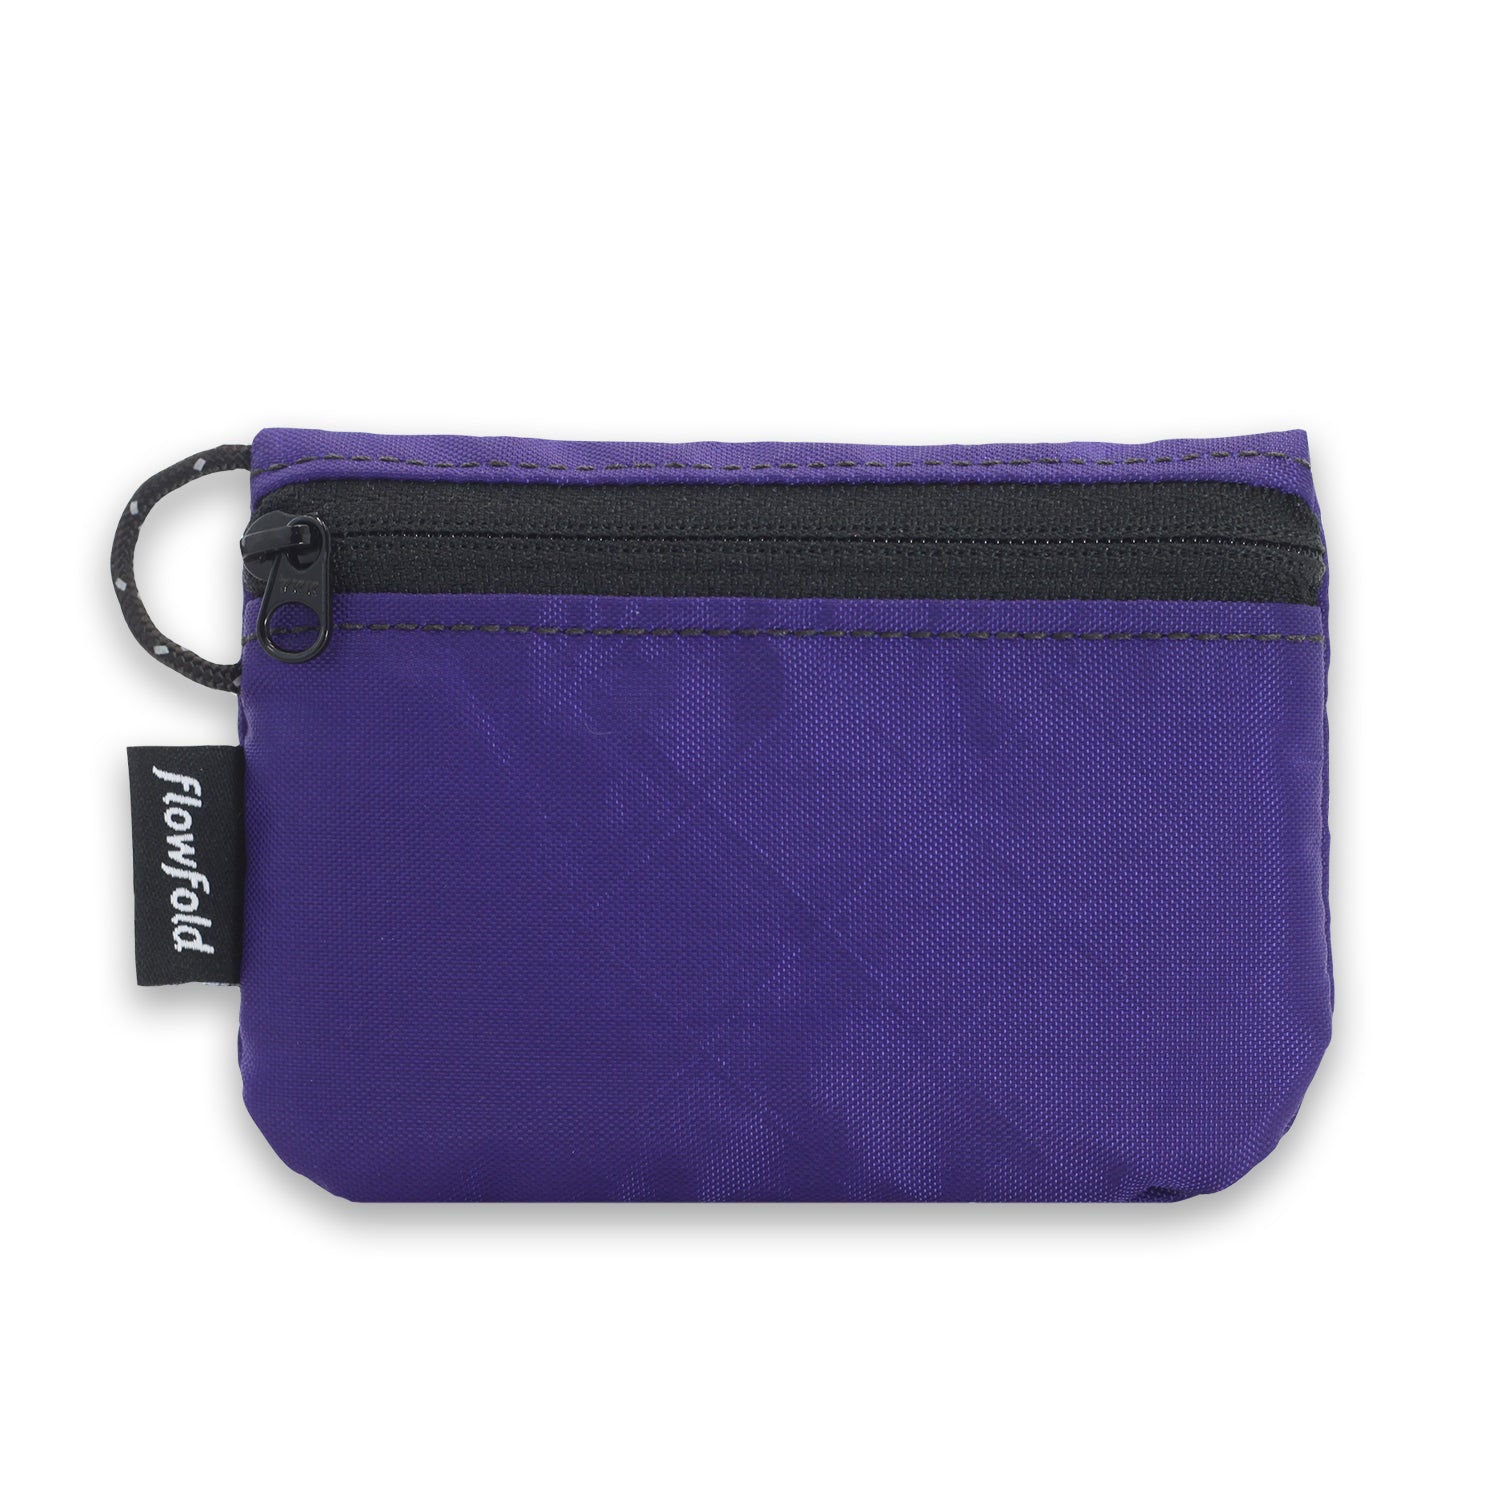 Flowfold Creator Zipper Pouch Phone Wallet, EcoPak: Recycled Purple